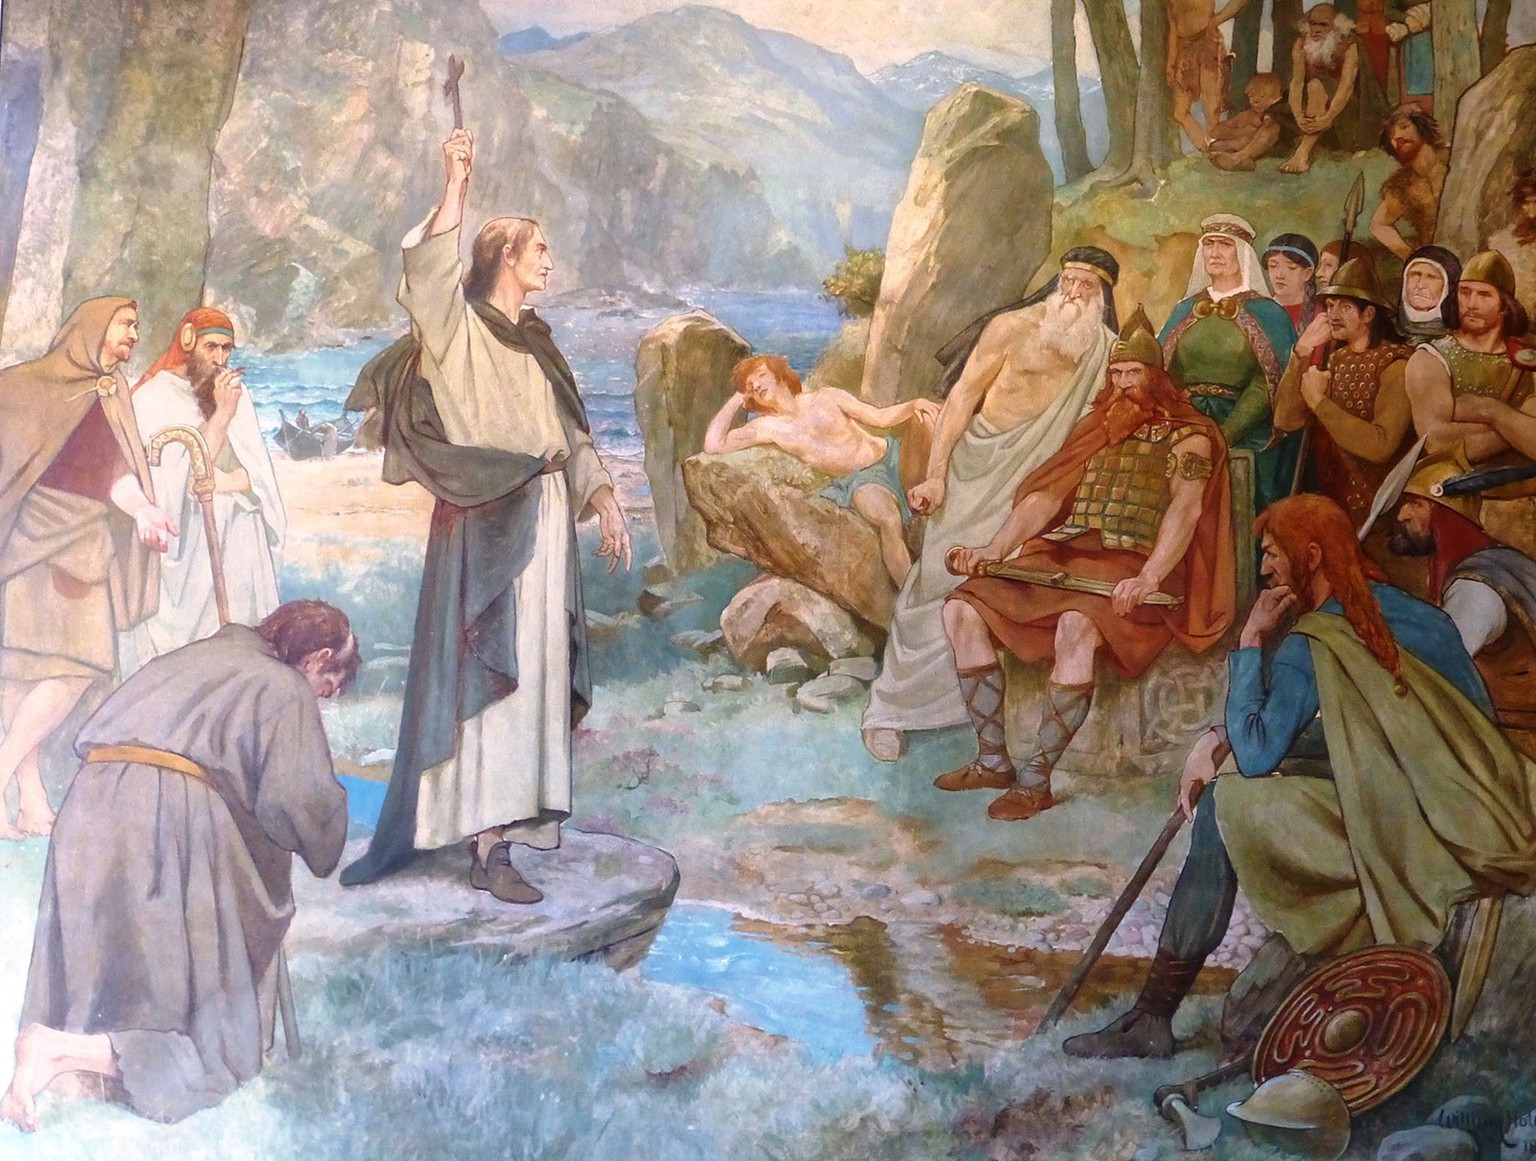 Columba konvertiert die Pikten, Wandgemälde von William Hole, um 1899.
https://commons.wikimedia.org/wiki/File:Saint_Columba_converting_the_Picts.jpg